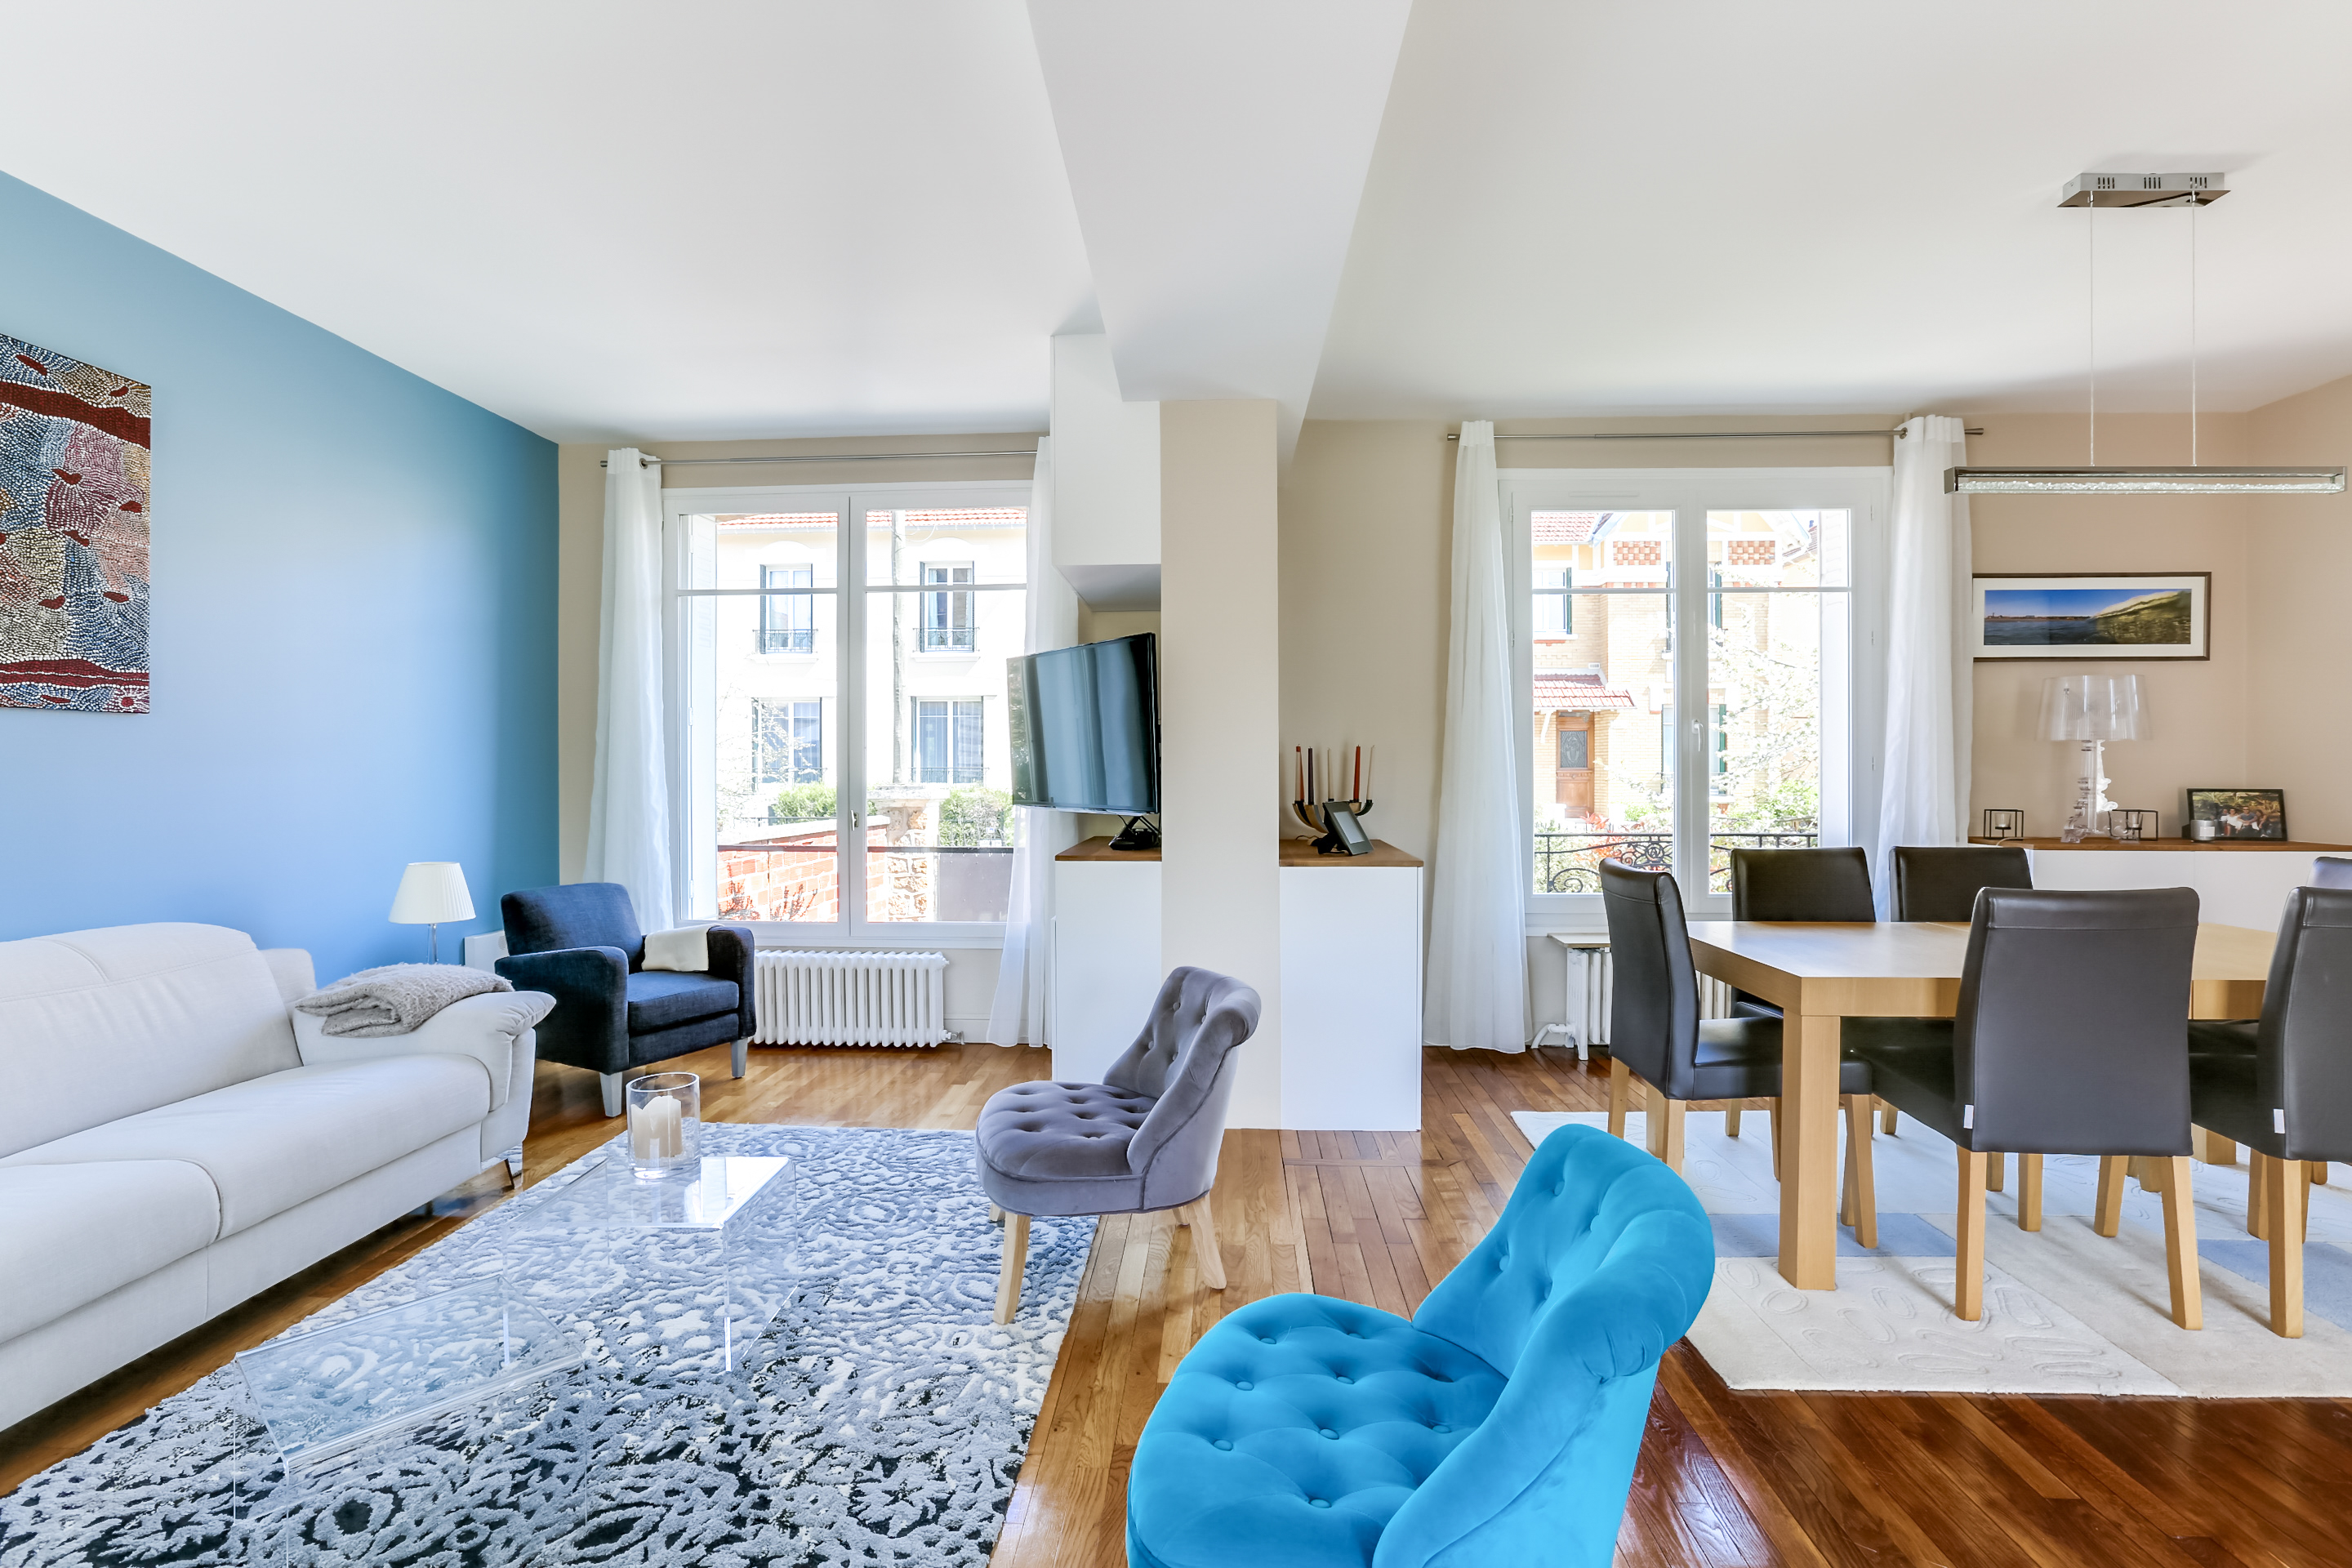 غرفة المعيشة بألوان زرقاء الأفكار الصورة